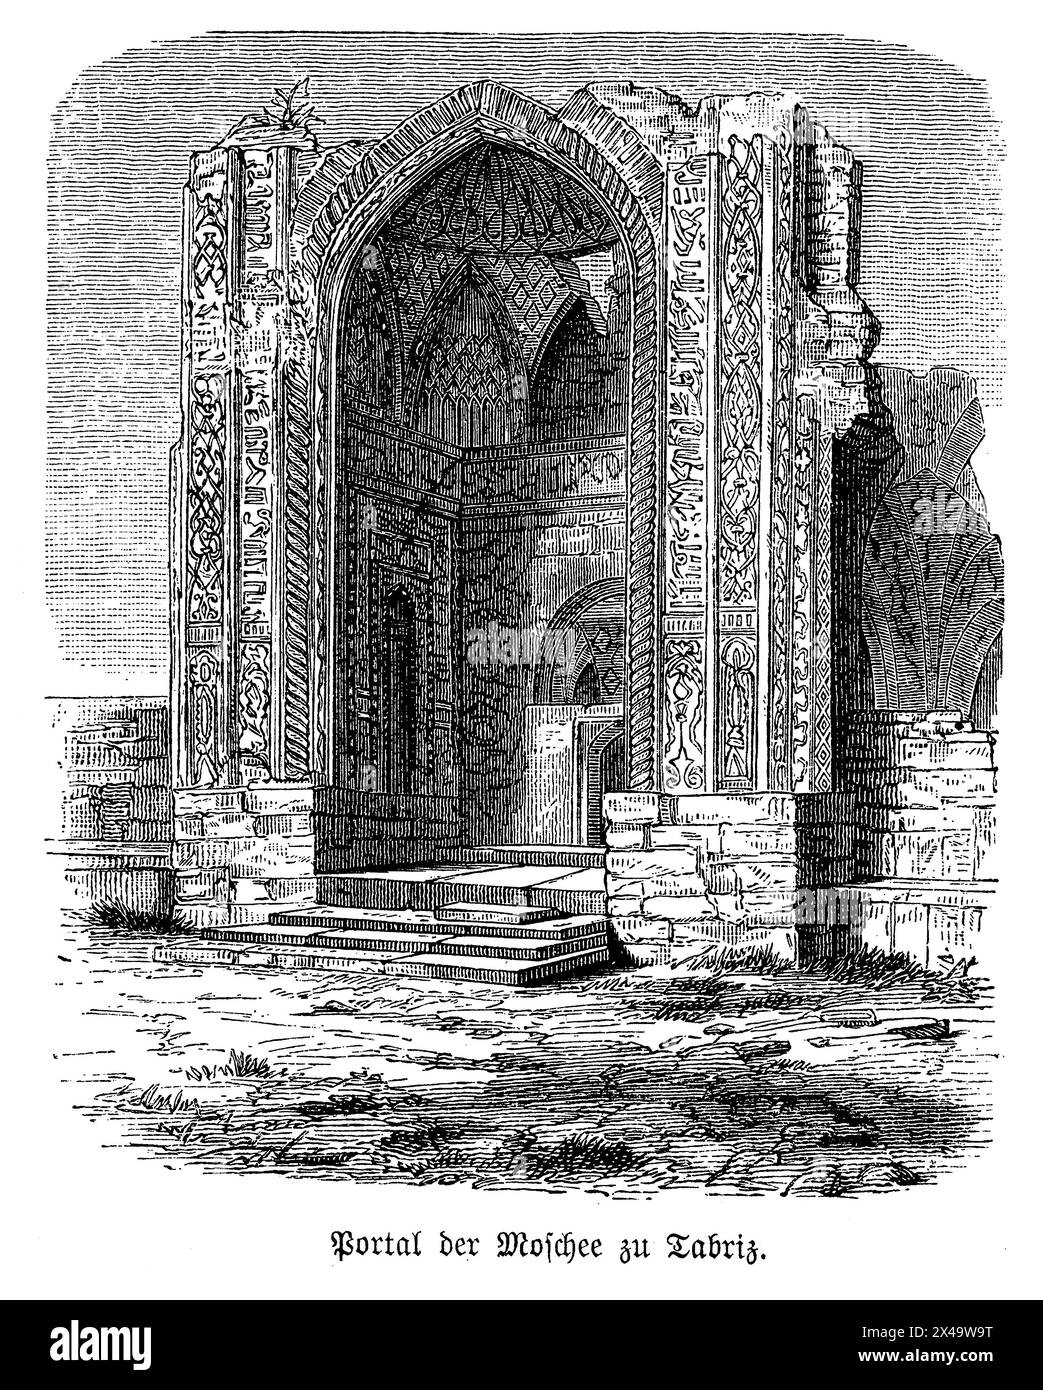 Eine künstlerische Darstellung der Ruinen des Eingangsportals der Blauen Moschee in Tabriz, Iran, die im 15. Jahrhundert erbaut wurde und das Wesen seiner atemberaubenden architektonischen und künstlerischen Errungenschaften festlegt. Dieser große Iwan steht hoch, eingerahmt von aufwendig geschnitzten Bögen, die über ihnen schweben, mit detaillierter islamischer Kalligraphie und einem Wandteppich aus floralen und geometrischen Motiven verziert. Das gesamte Portal ist mit einer atemberaubenden Auswahl an azurblauen und Saphirmosaikfliesen bedeckt, die unter dem Sonnenlicht schimmern und den Spitznamen der Moschee „Blaue Moschee“ widerspiegeln. Das Bildmaterial würde die Tiefe und Komplexität der Kachel zeigen Stockfoto